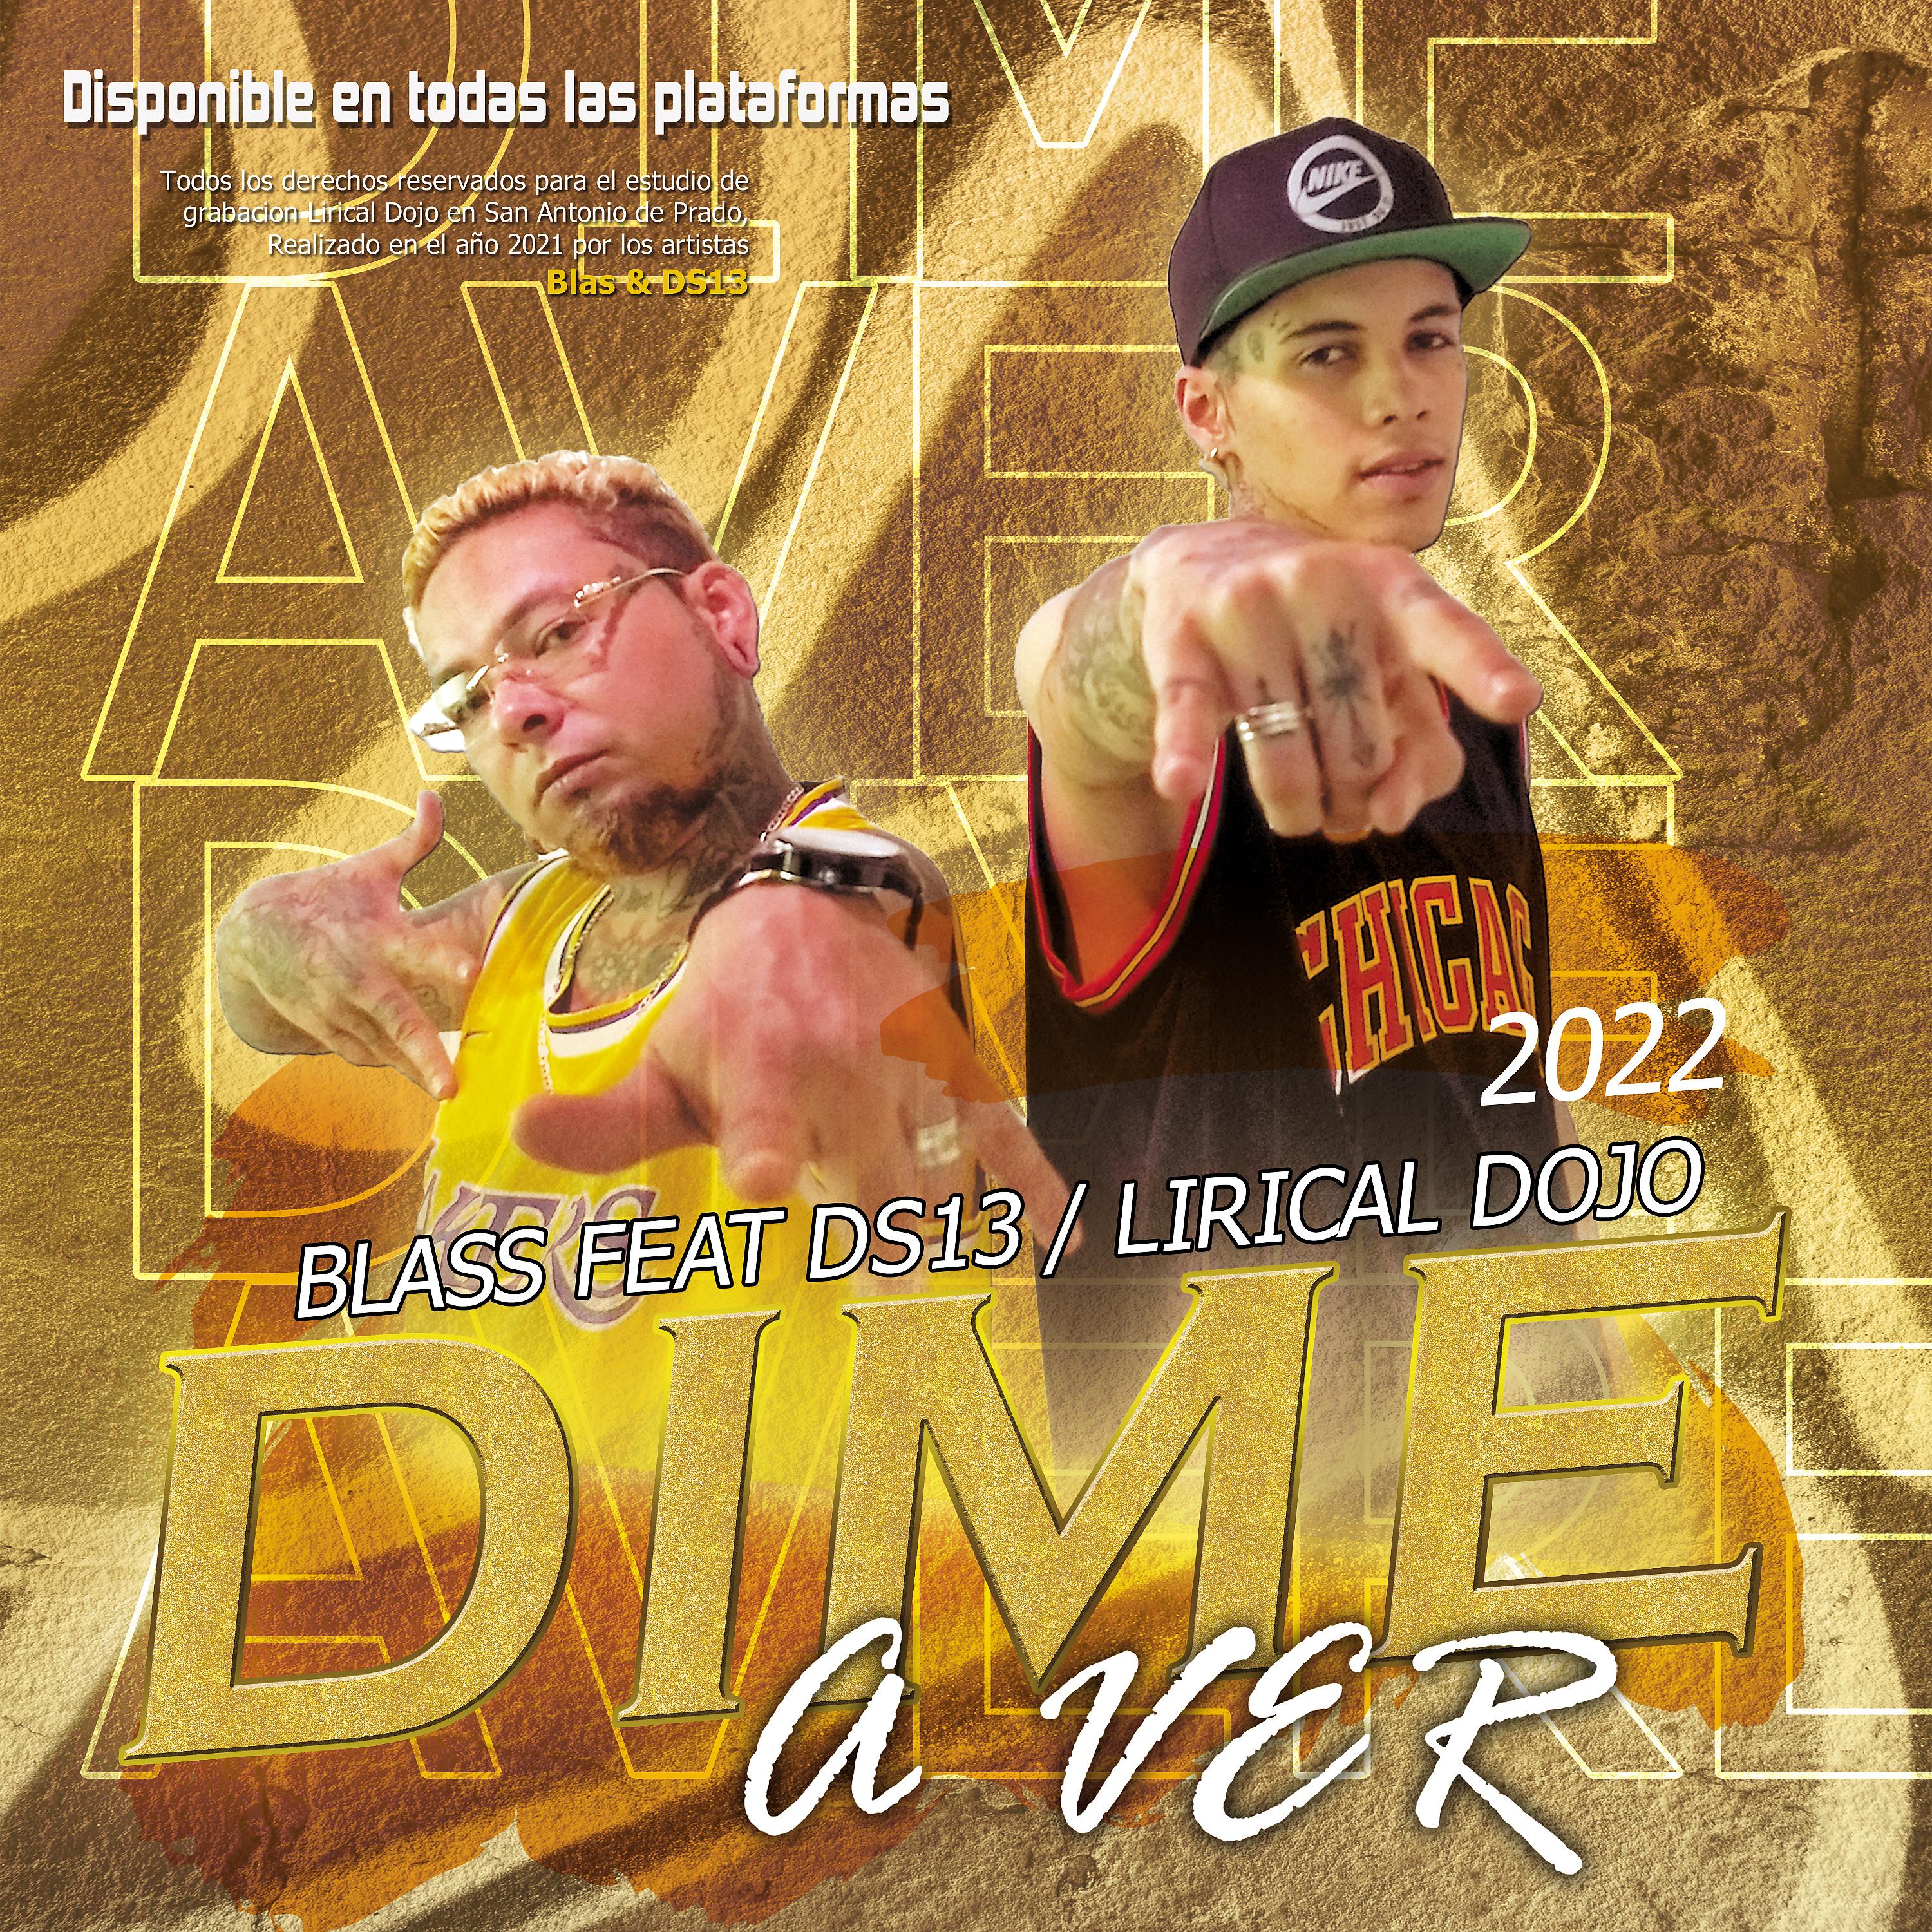 Постер альбома Dime a Ver